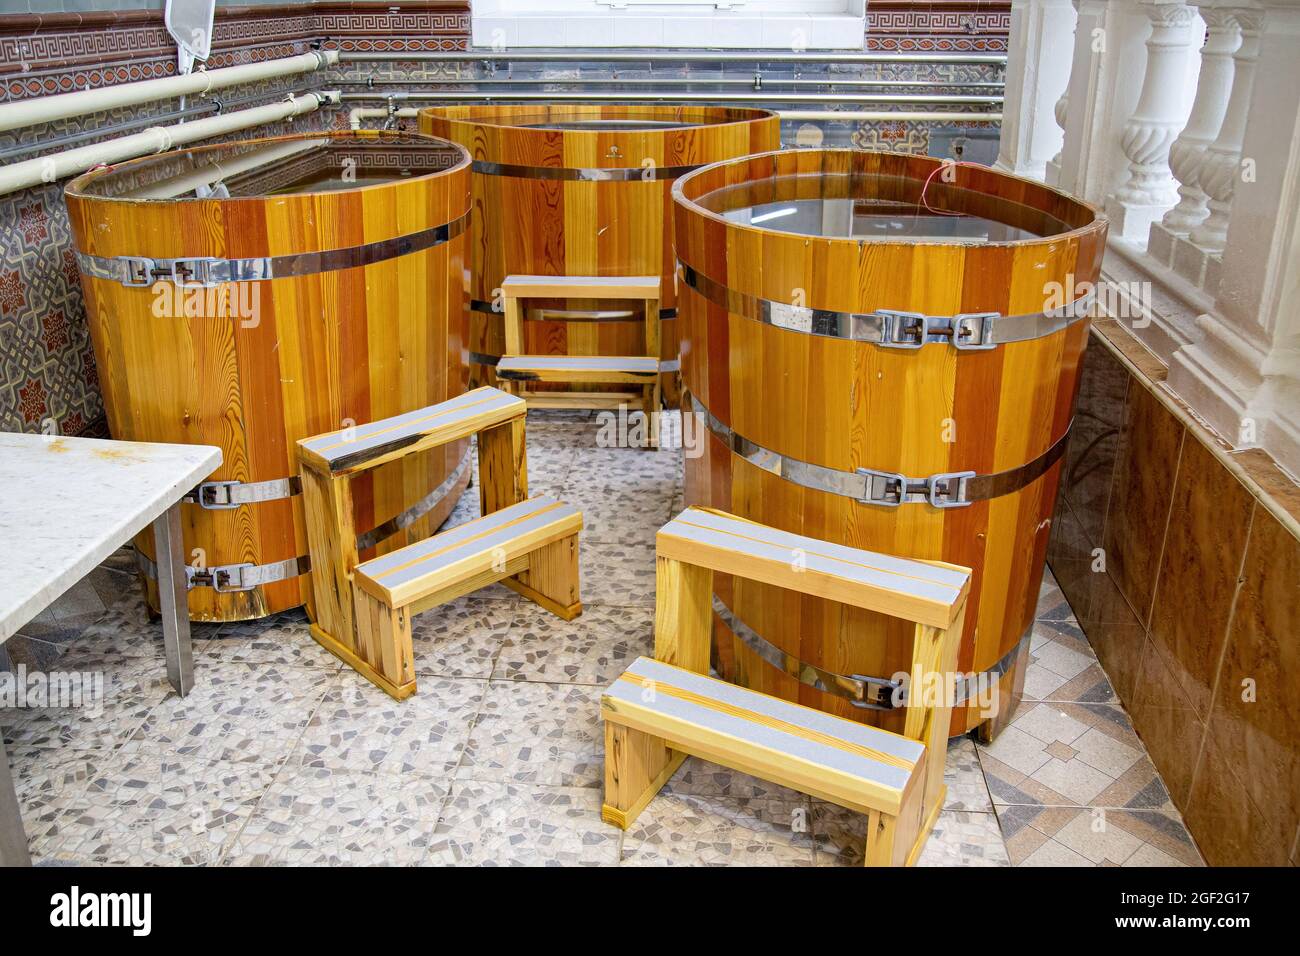 Western style wooden bathtubs in barrel shape. Spa treatments barrels cedar bath in wooden decoration. Wood buckets Stock Photo